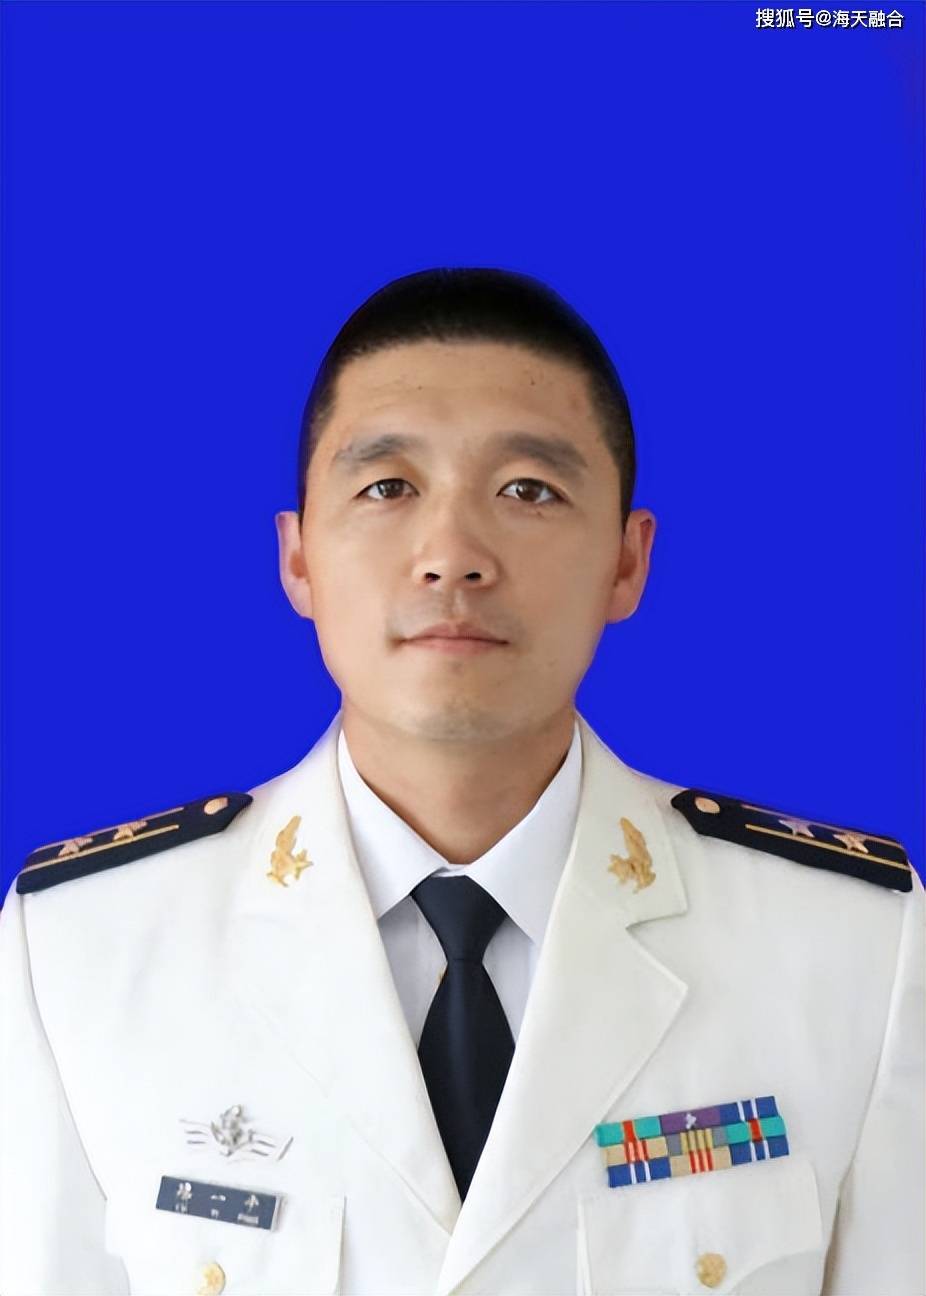 中国海军上校军装图片